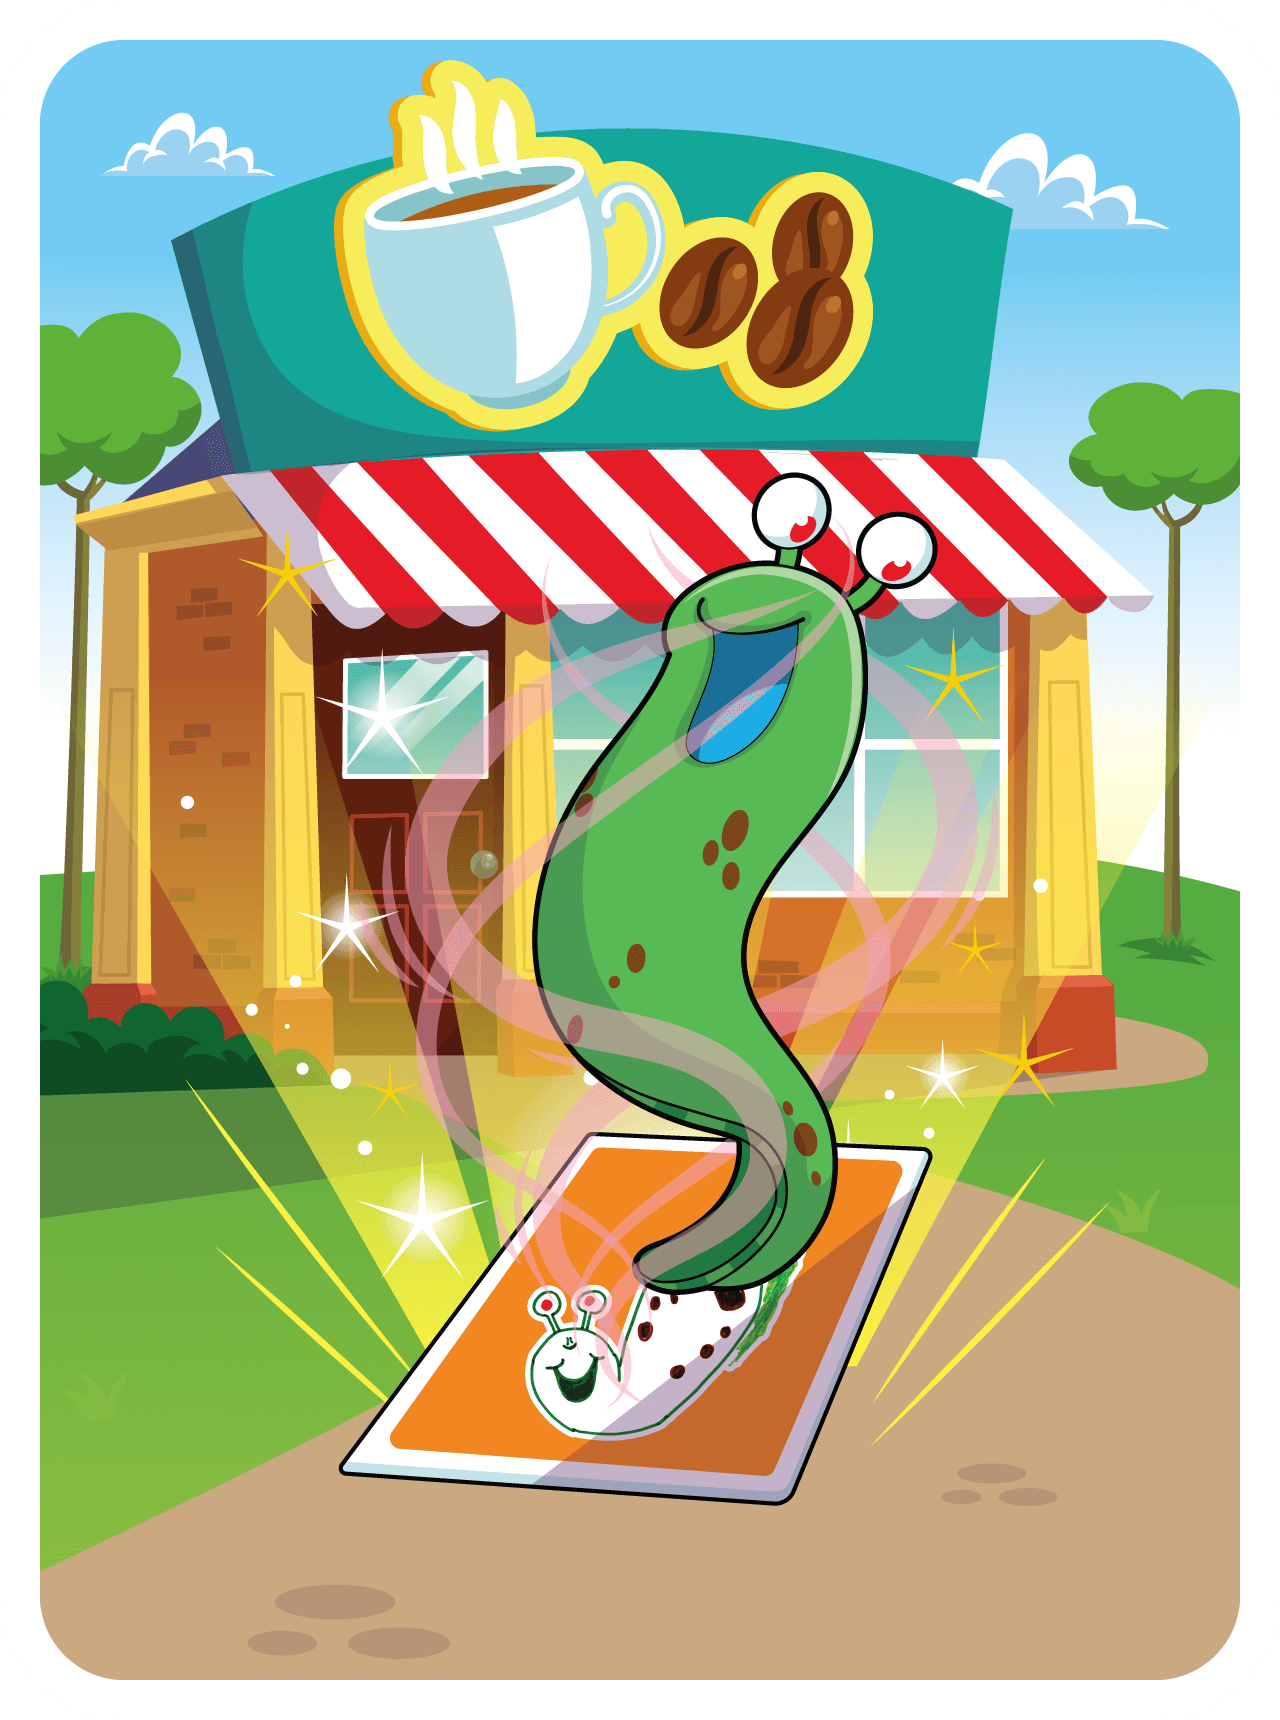 Slay'n Slug #8473